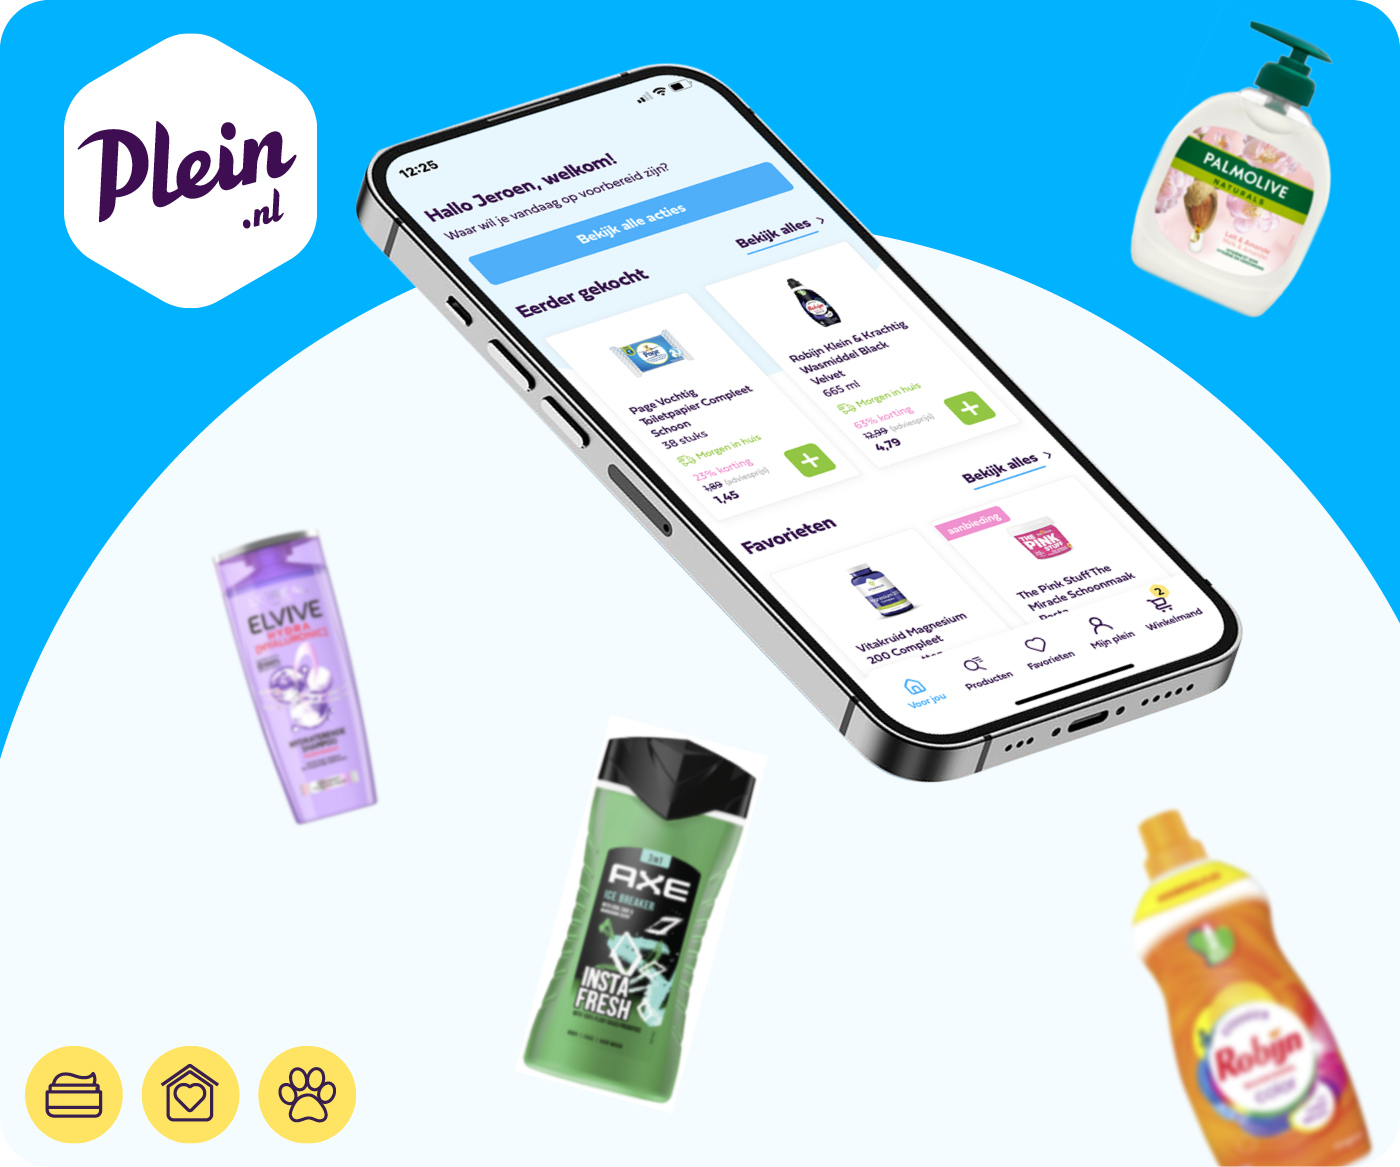 Plein.nl, de grootste webwinkelier in de persoonlijke verzorgingsbranche, presenteert een handigere bestel-app